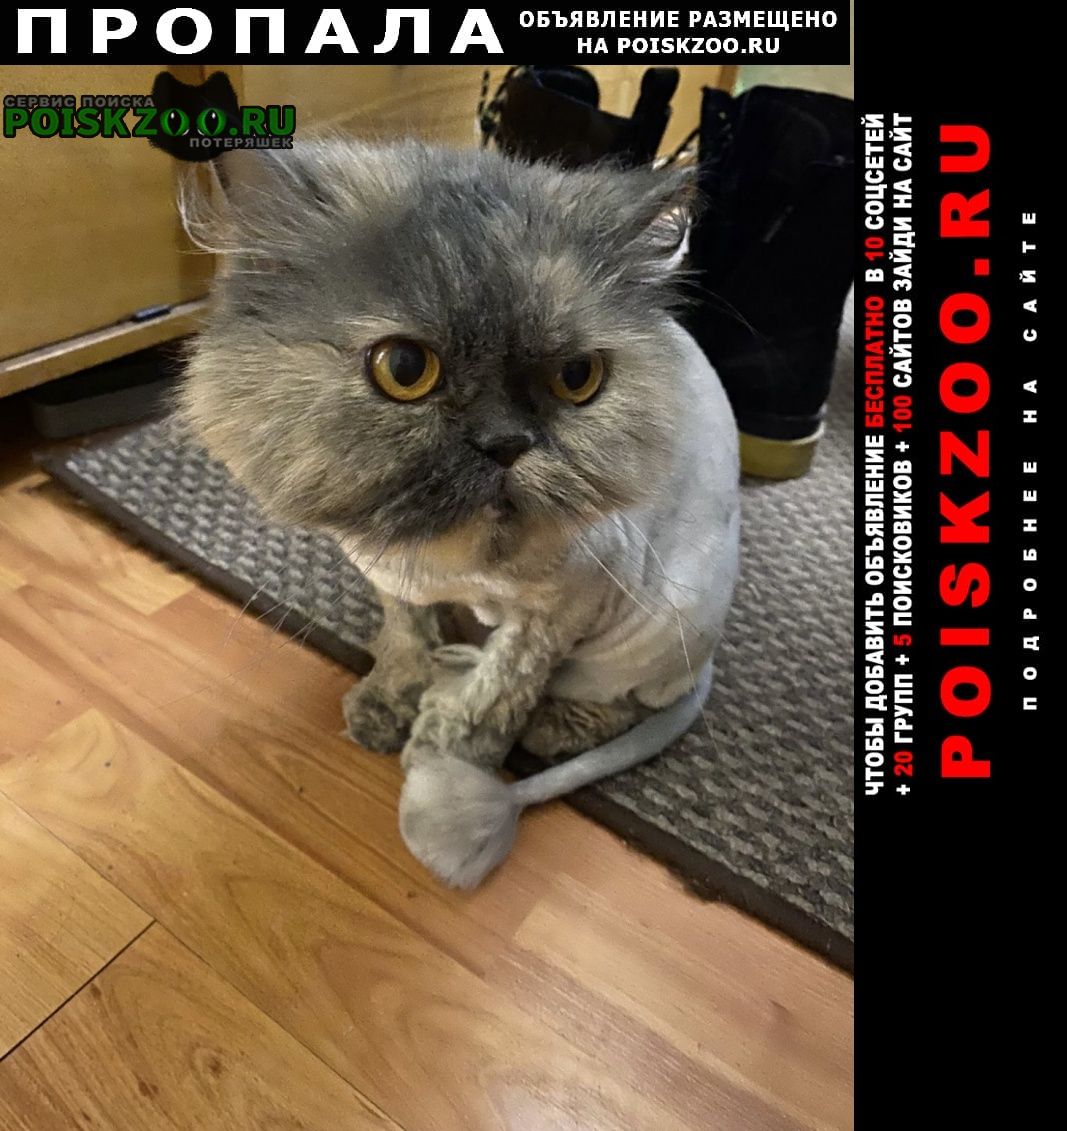 Пропала кошка персидская, серая, стриженная Санкт-Петербург